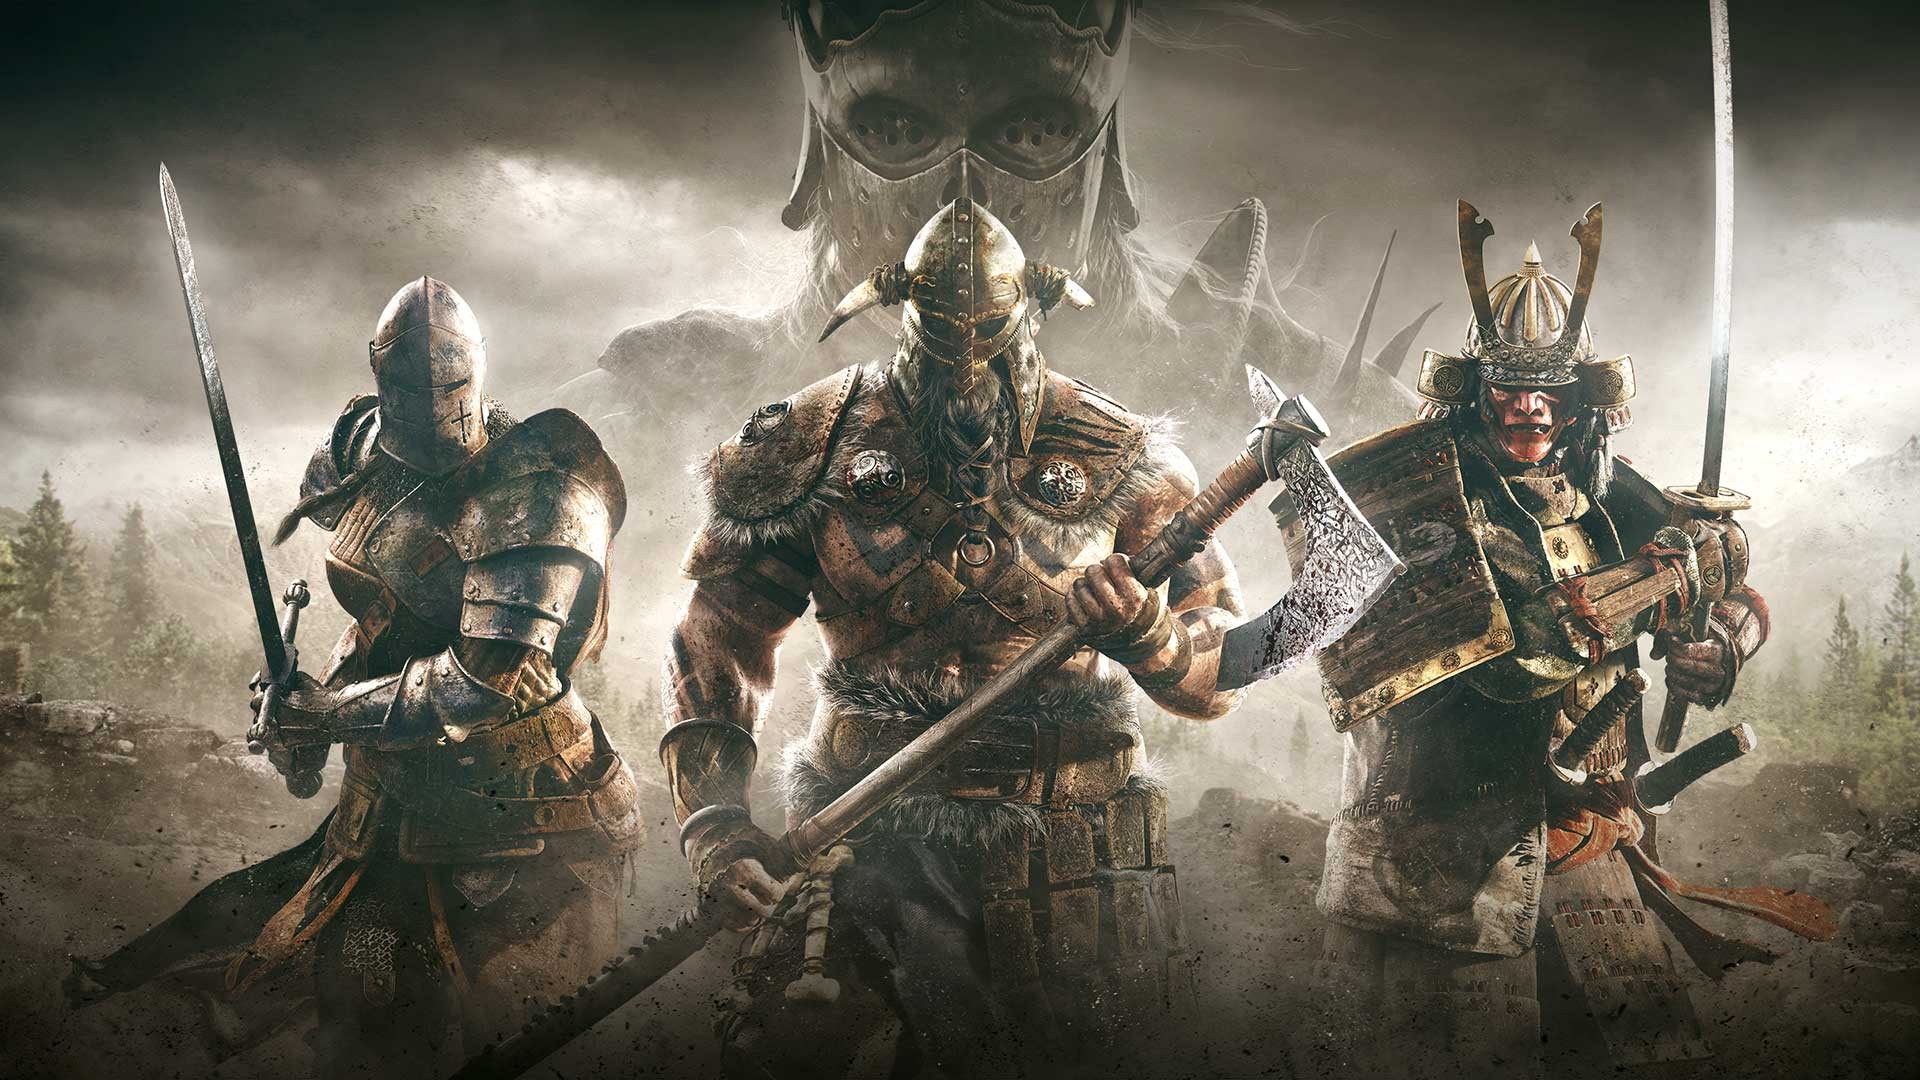 knight, For Honor, Video games, Vikings, Samurai, Crusaders, Sword, Axe Wallpaper